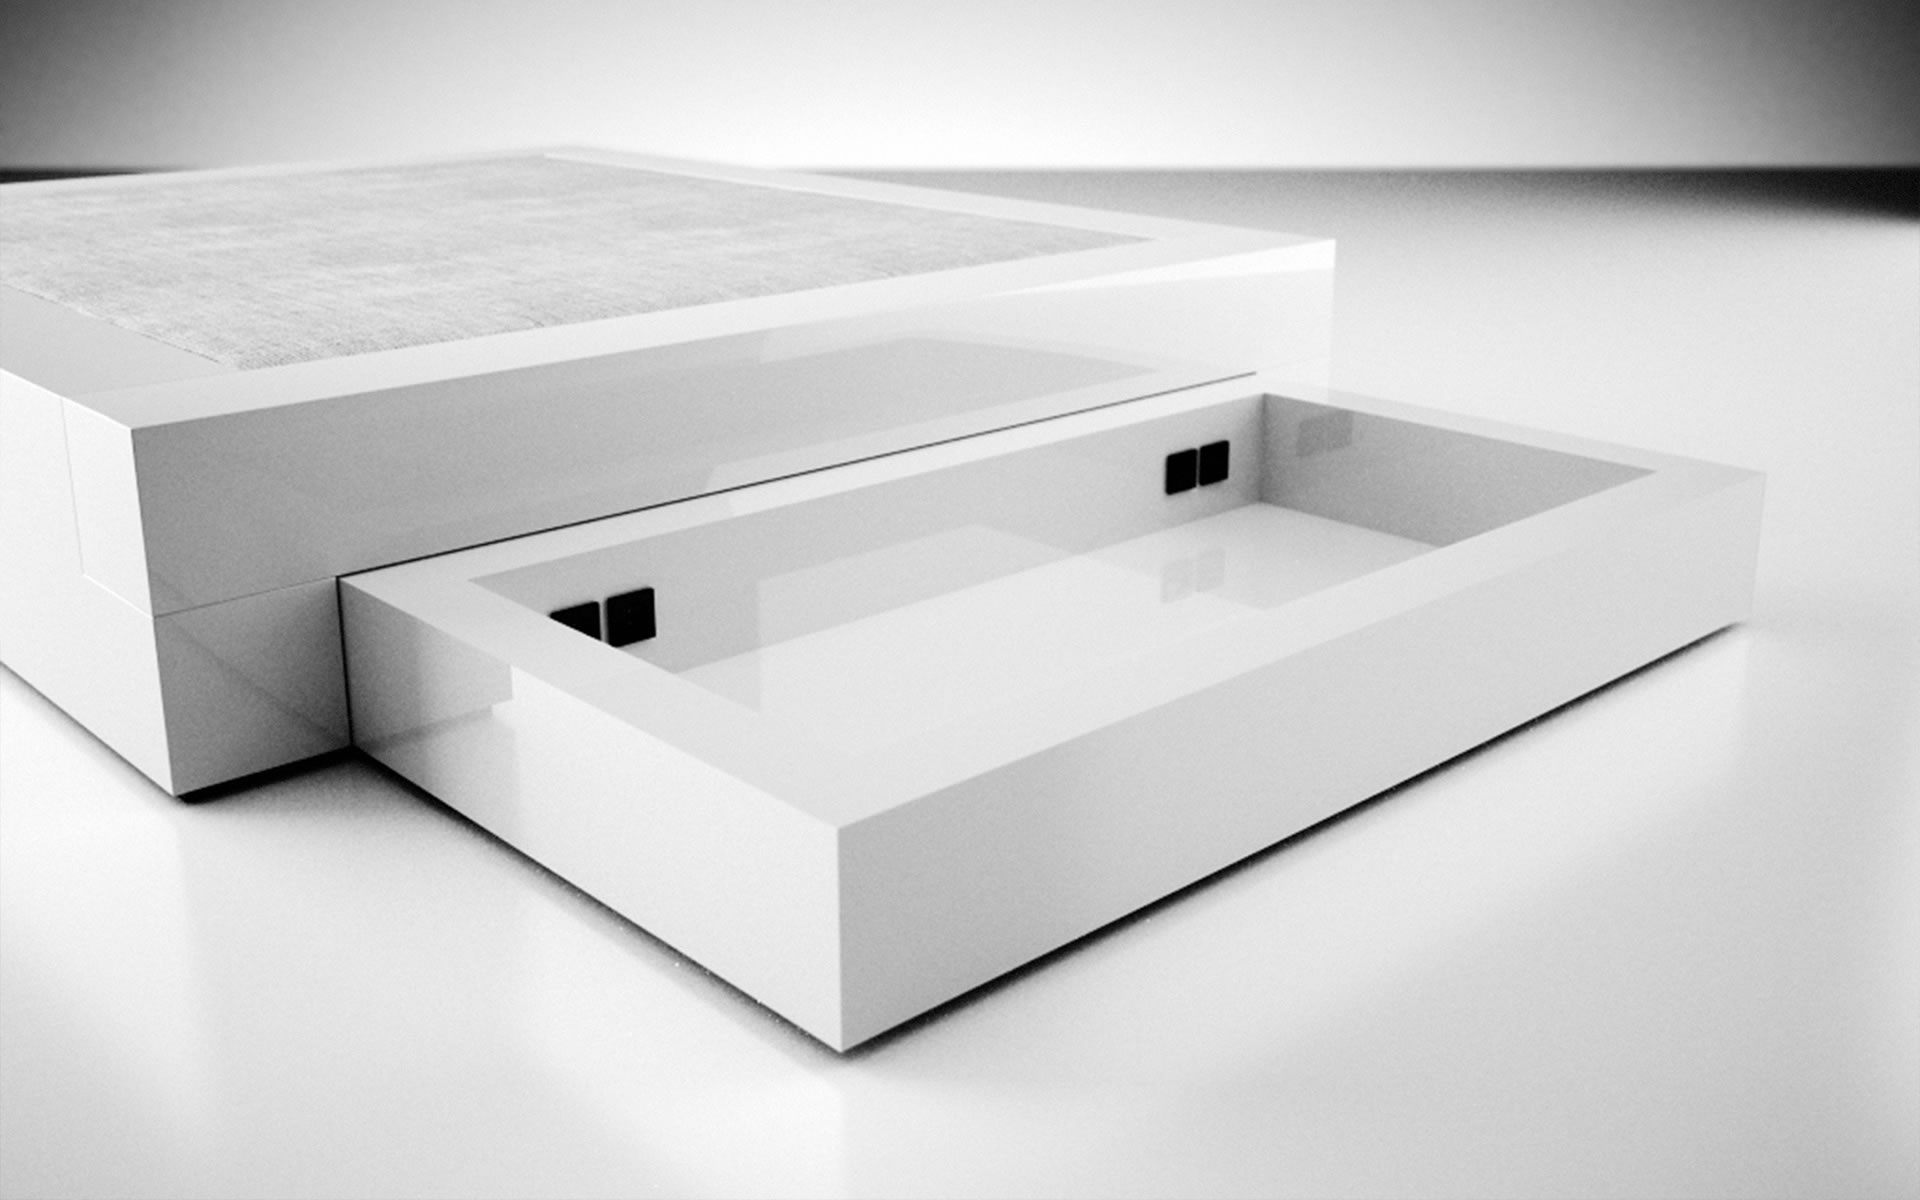 Design-Doppel-Bett mit Stauraum in weiss 160x200 flach Lack